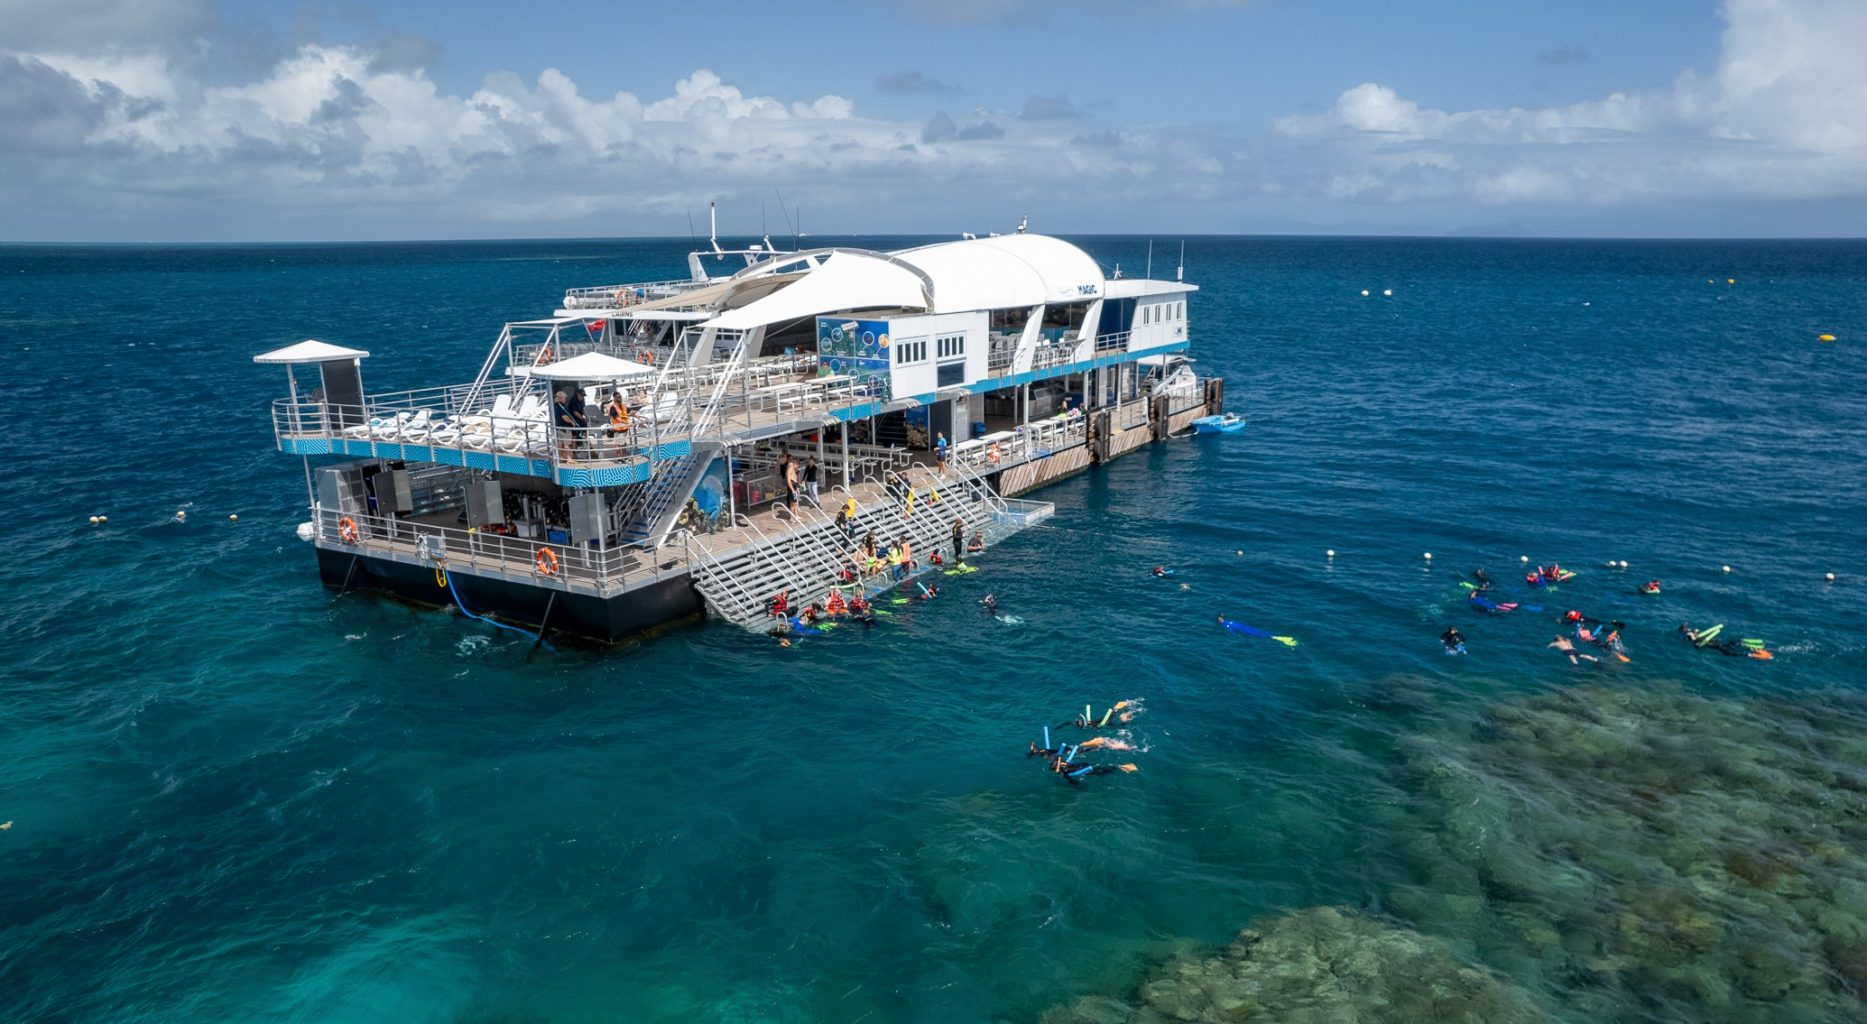 从凯恩斯出发，乘坐快速双体船或观光直升机，您可以到达魔幻丽礁（Reef Magic）外堡礁浮动平台，这是探索大堡礁的完美基地。您可以在这里进行浮潜、水肺潜水、乘坐半潜水艇游览或者在宽敞的日光浴甲板上尽情放松并享用午餐。无论您的年龄或活动能力如何，这里都有适合每个人的活动。快来体验这次探险吧！